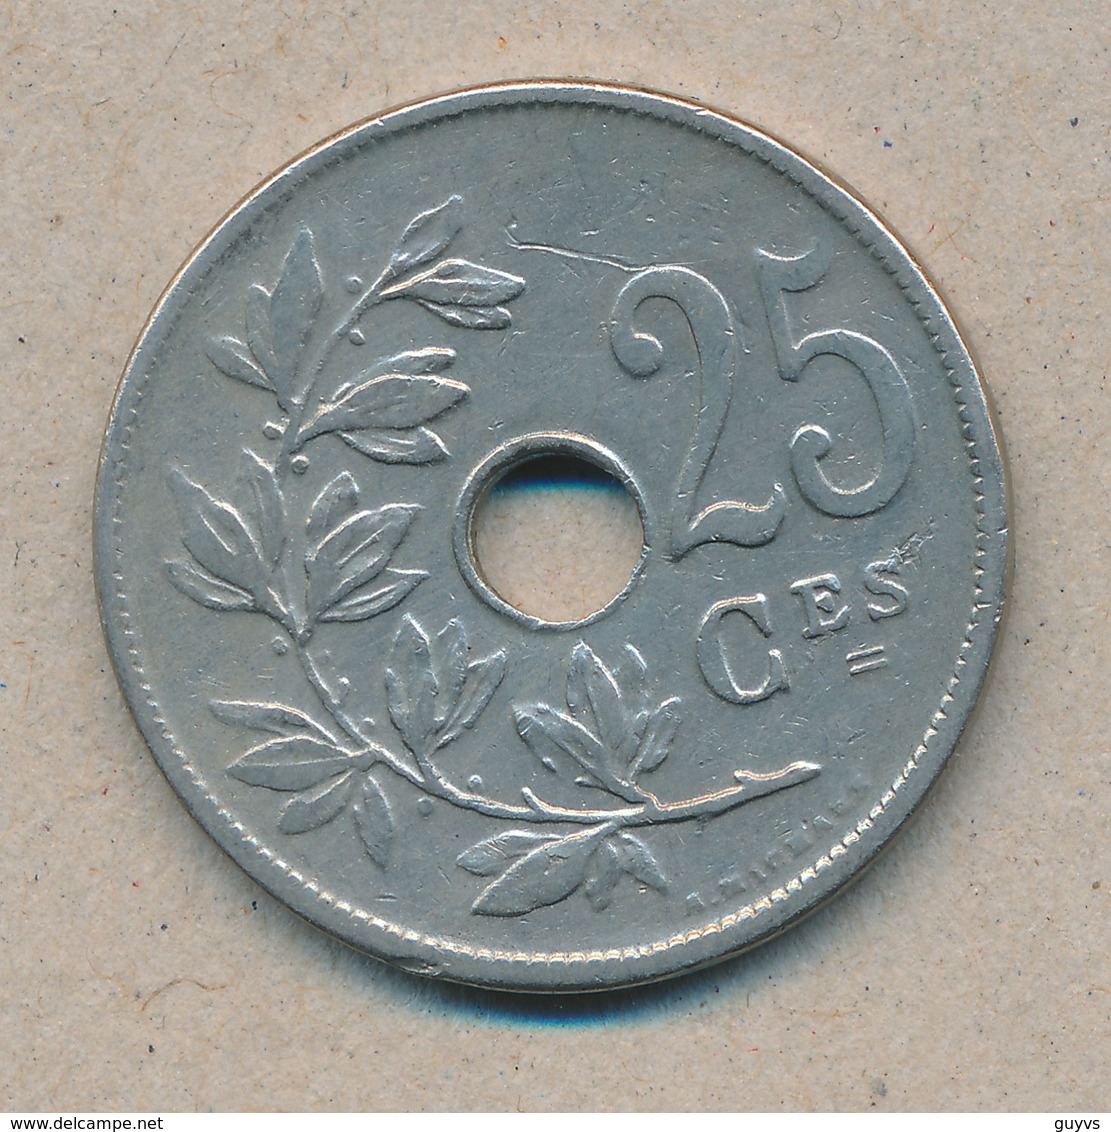 België/Belgique 25 Ct Leopold II 1909 Fr Morin 256 (703130) - 25 Centimes